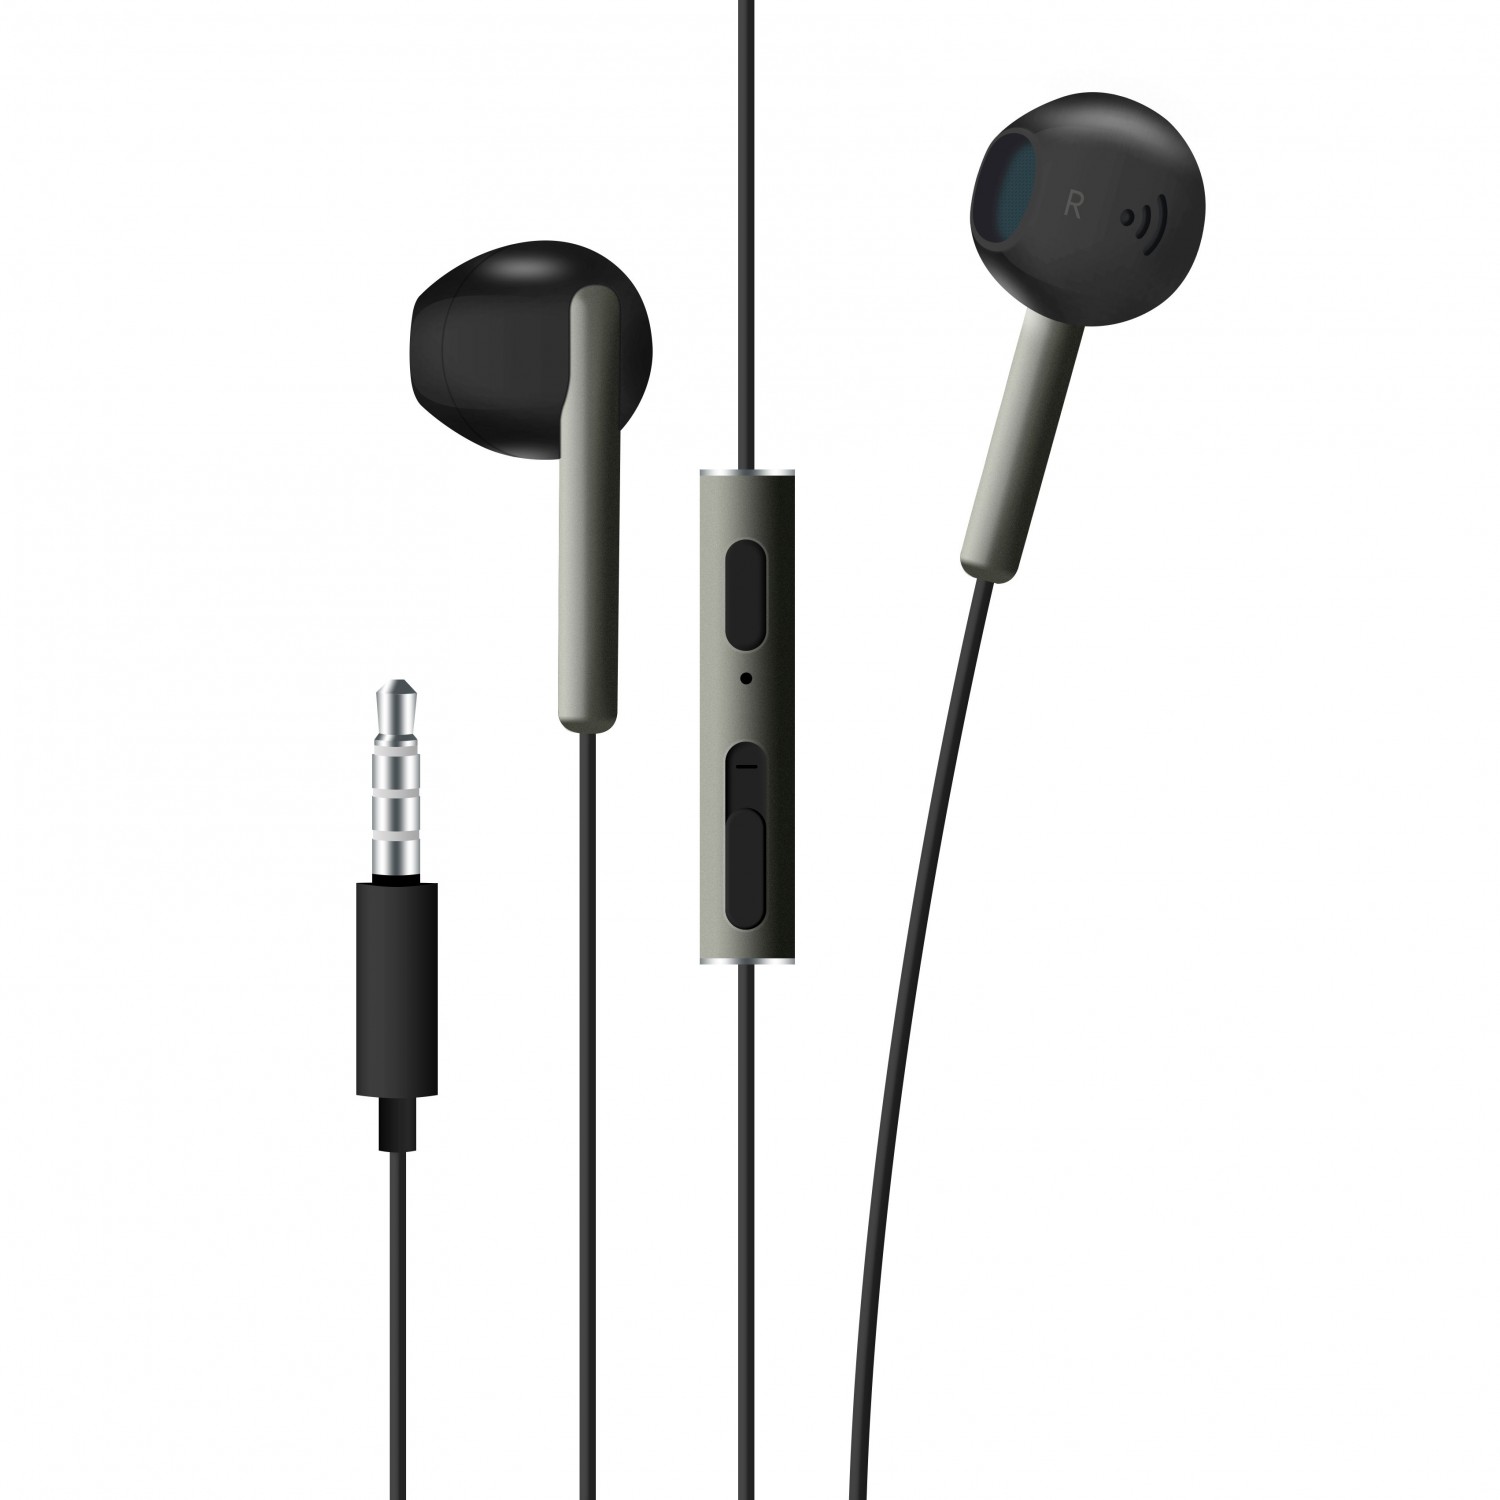 Pecková sluchátka FIXED EGG4 s mikrofonem a ovladačem, černostříbrná